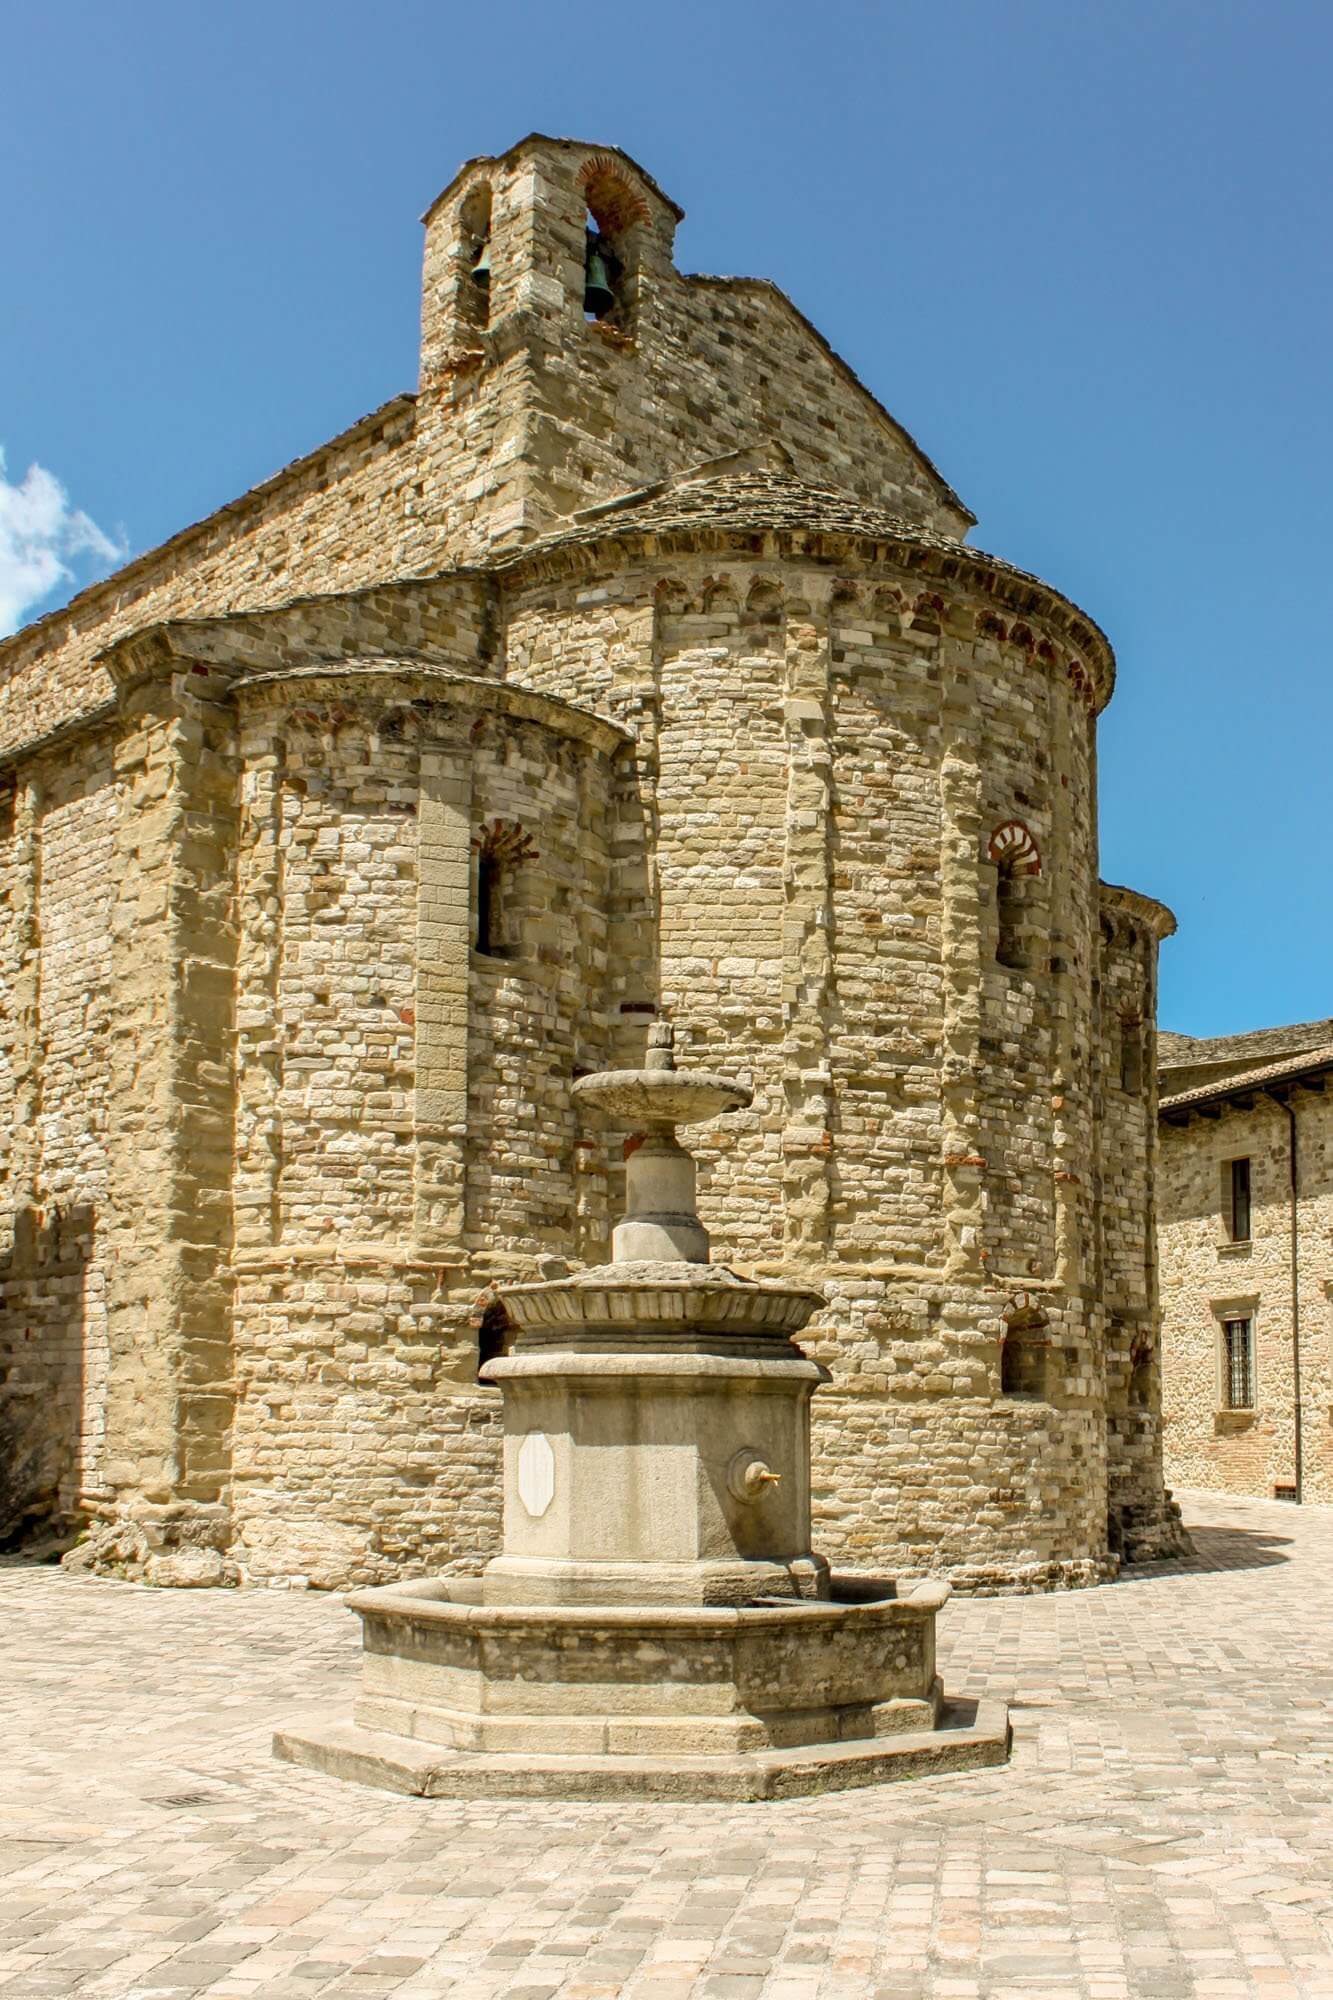 The Parish Church in San Leo, Le Marche, Italy